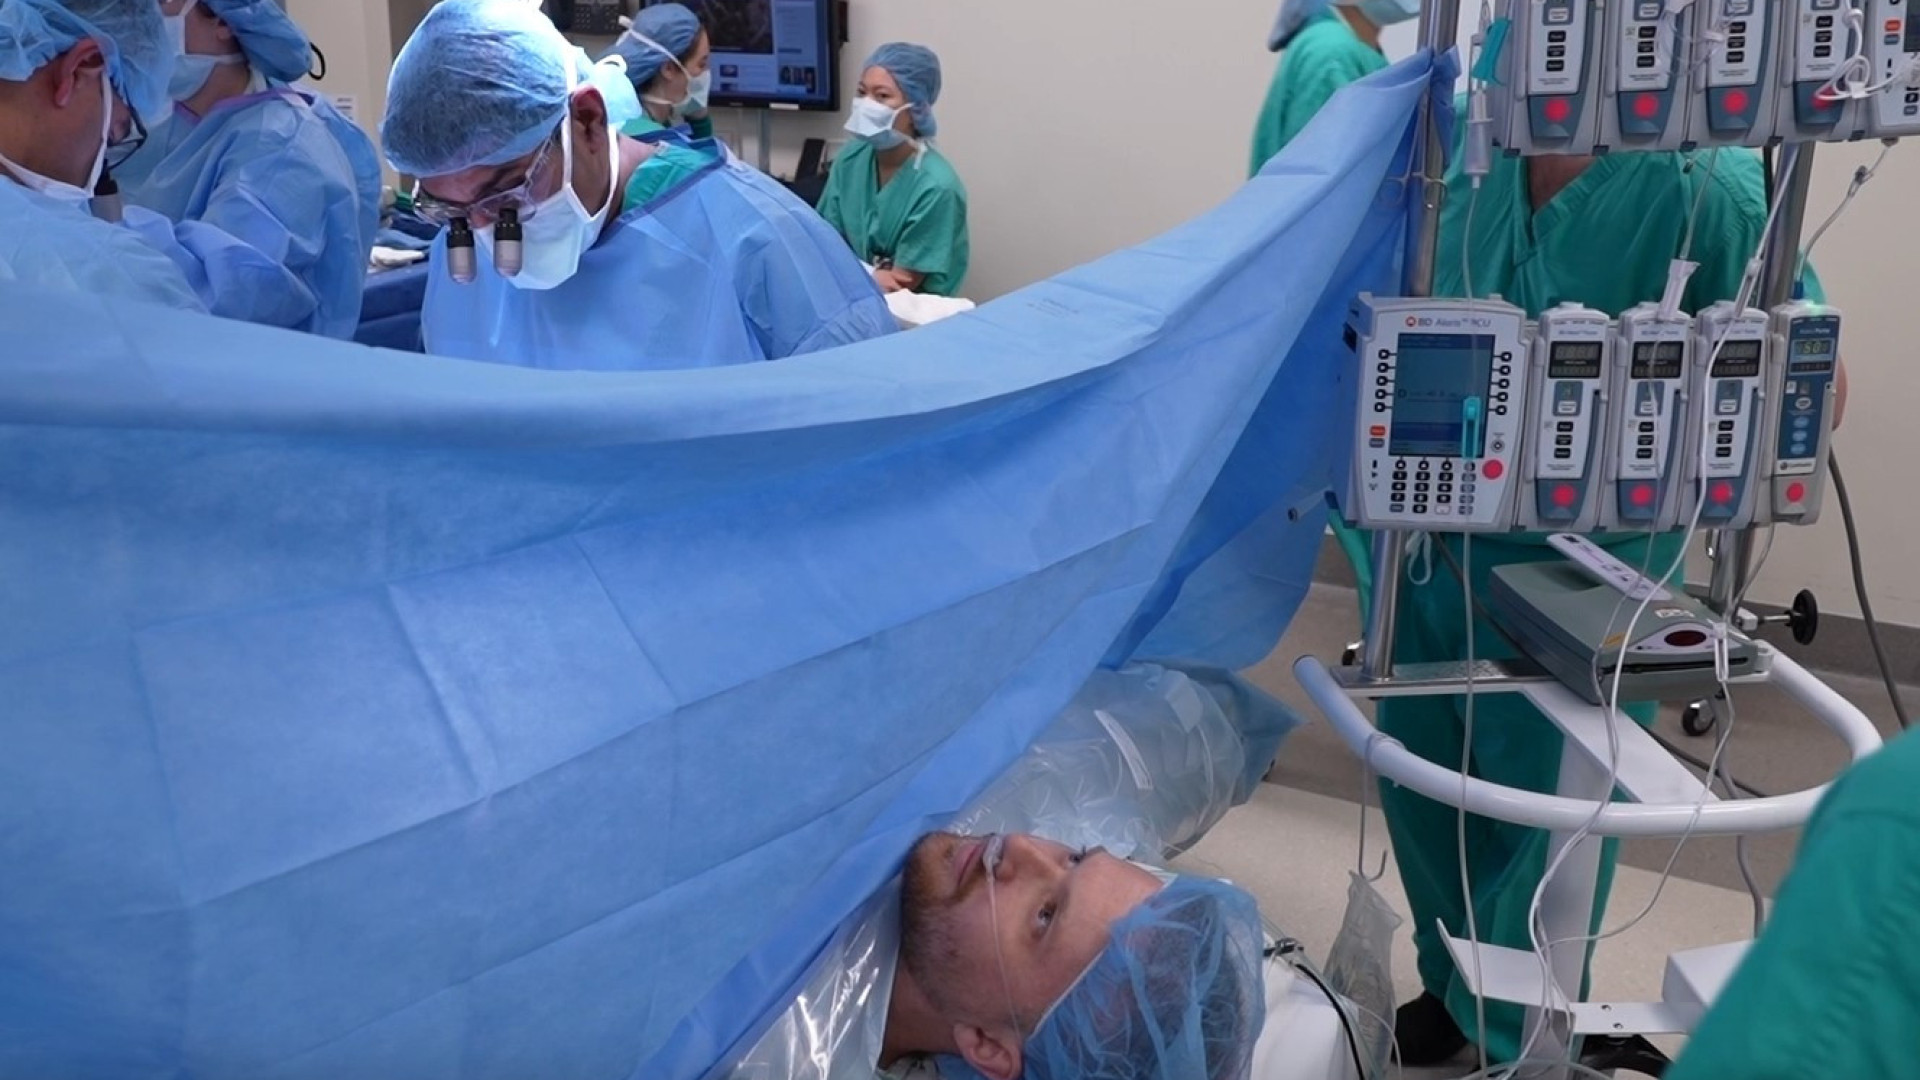 Paciente fica acordado e assiste ao transplante de rim; veja as imagens